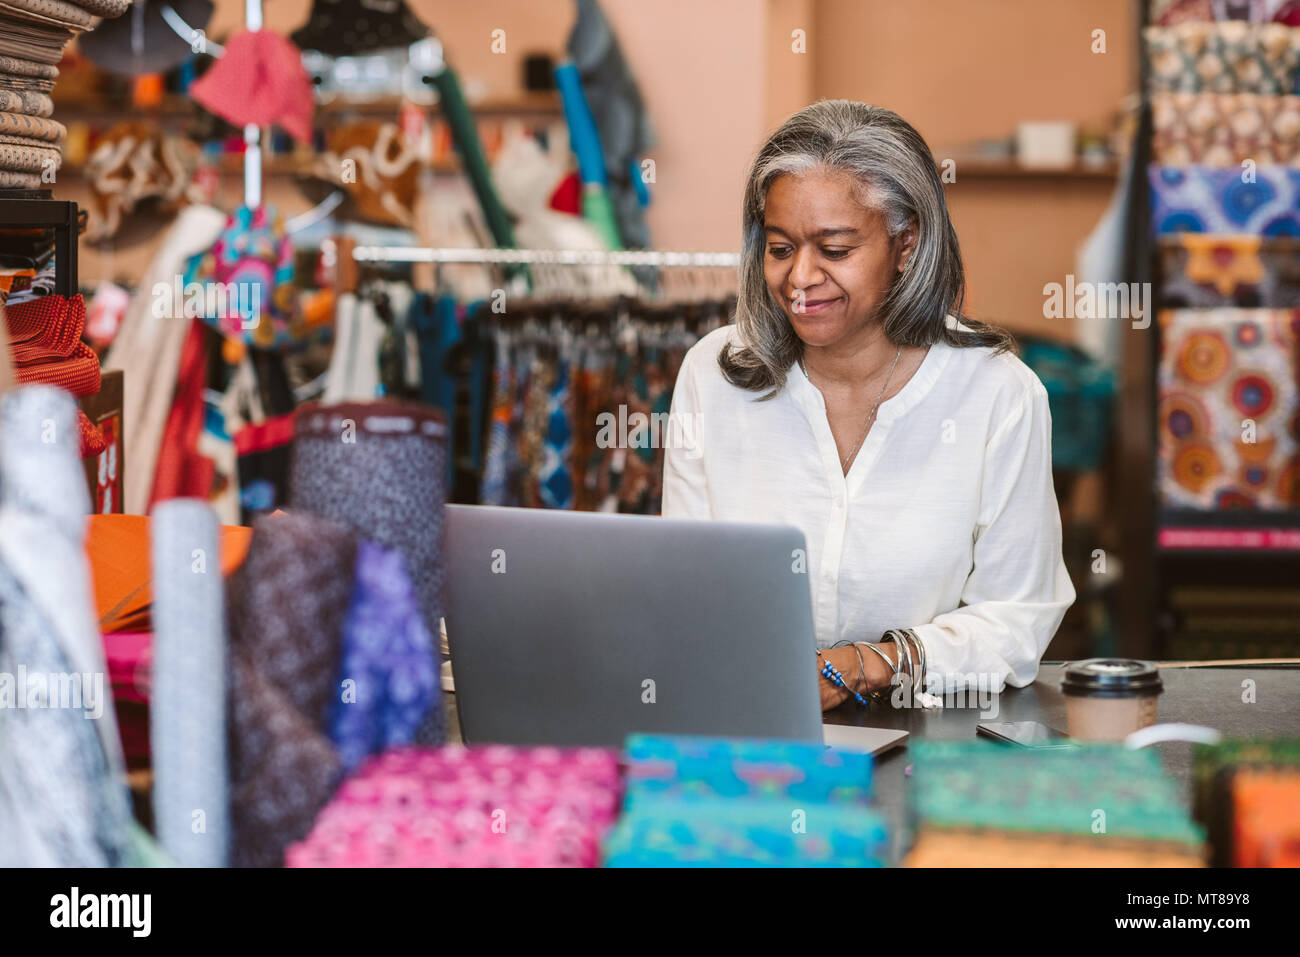 Lächelnd reife Stoff shop besitzer hinter einem Zähler von bunten Tüchern und Textilien umgeben und an einem Notebook arbeitet Stockfoto